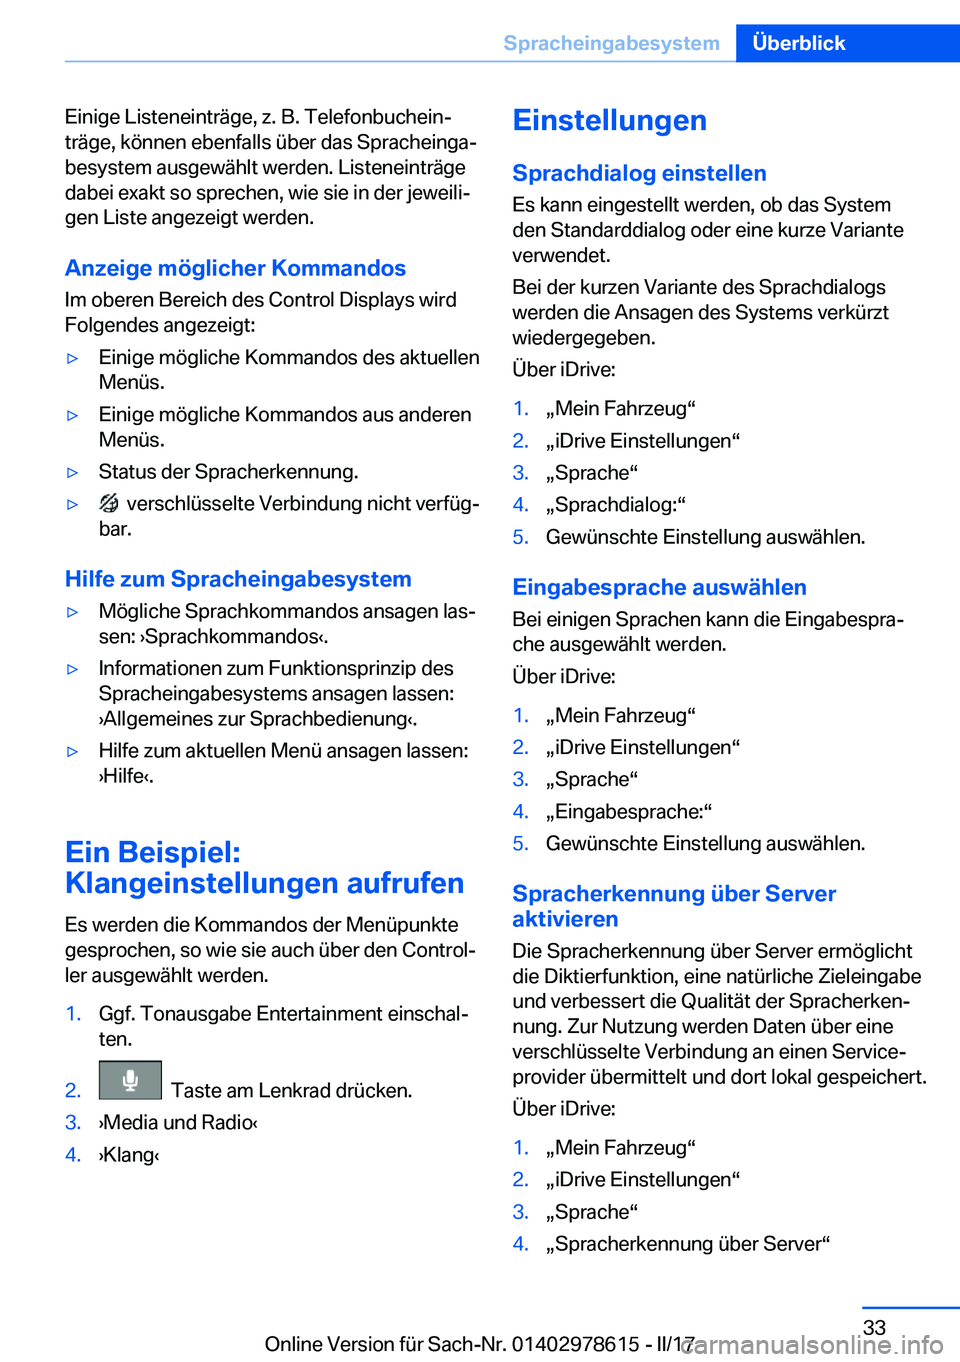 BMW 7 SERIES 2018  Betriebsanleitungen (in German) �E�i�n�i�g�e� �L�i�s�t�e�n�e�i�n�t�r�ä�g�e�,� �z�.� �B�.� �T�e�l�e�f�o�n�b�u�c�h�e�i�nj
�t�r�ä�g�e�,� �k�ö�n�n�e�n� �e�b�e�n�f�a�l�l�s� �ü�b�e�r� �d�a�s� �S�p�r�a�c�h�e�i�n�g�aj
�b�e�s�y�s�t�e�m